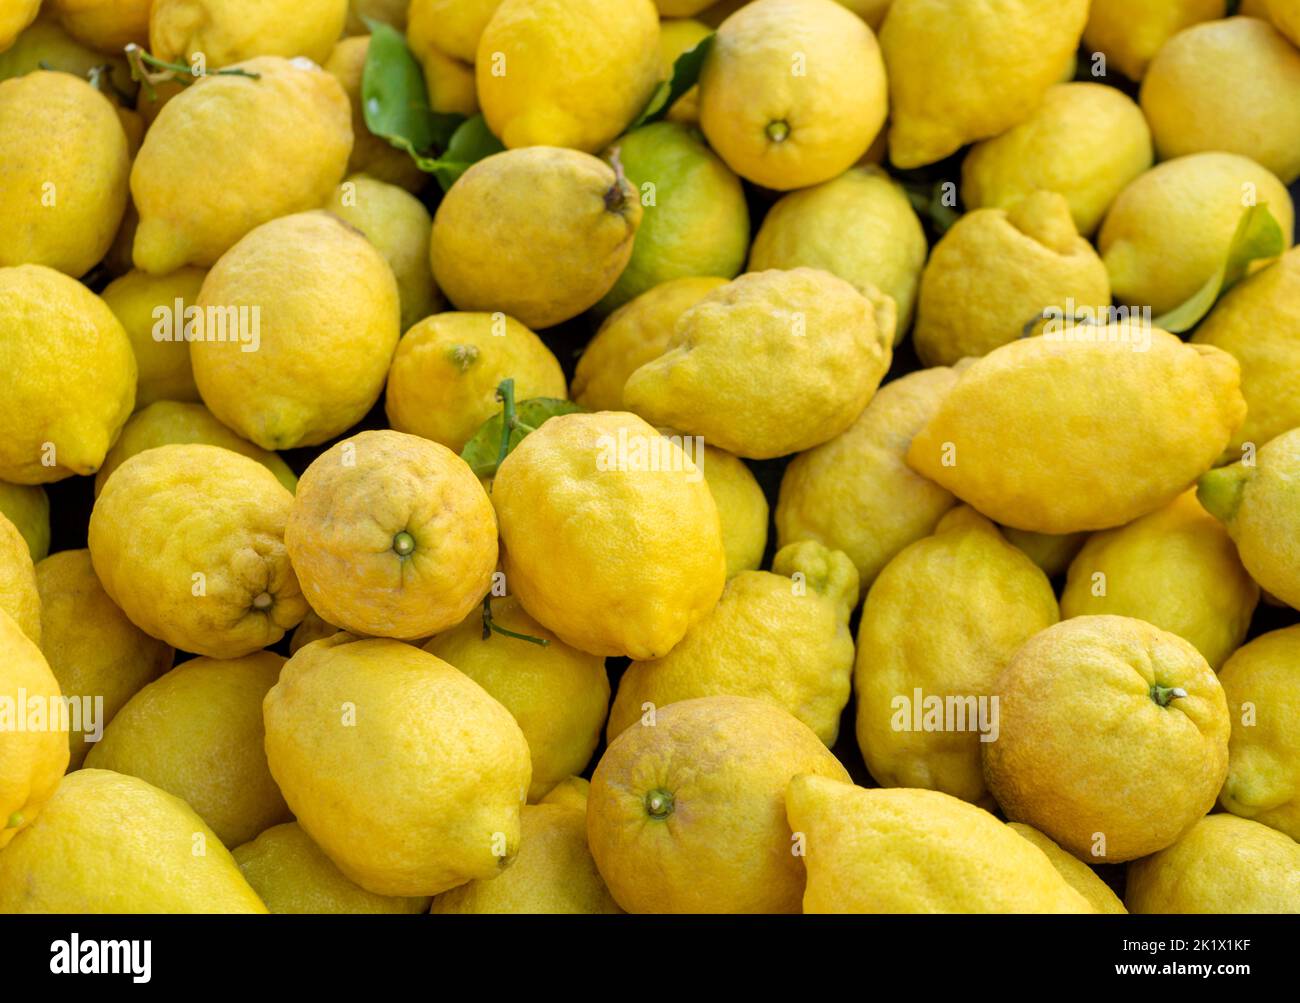 Imágenes de cuadro completo que muestran muchos limones orgánicos amarillos maduros Foto de stock